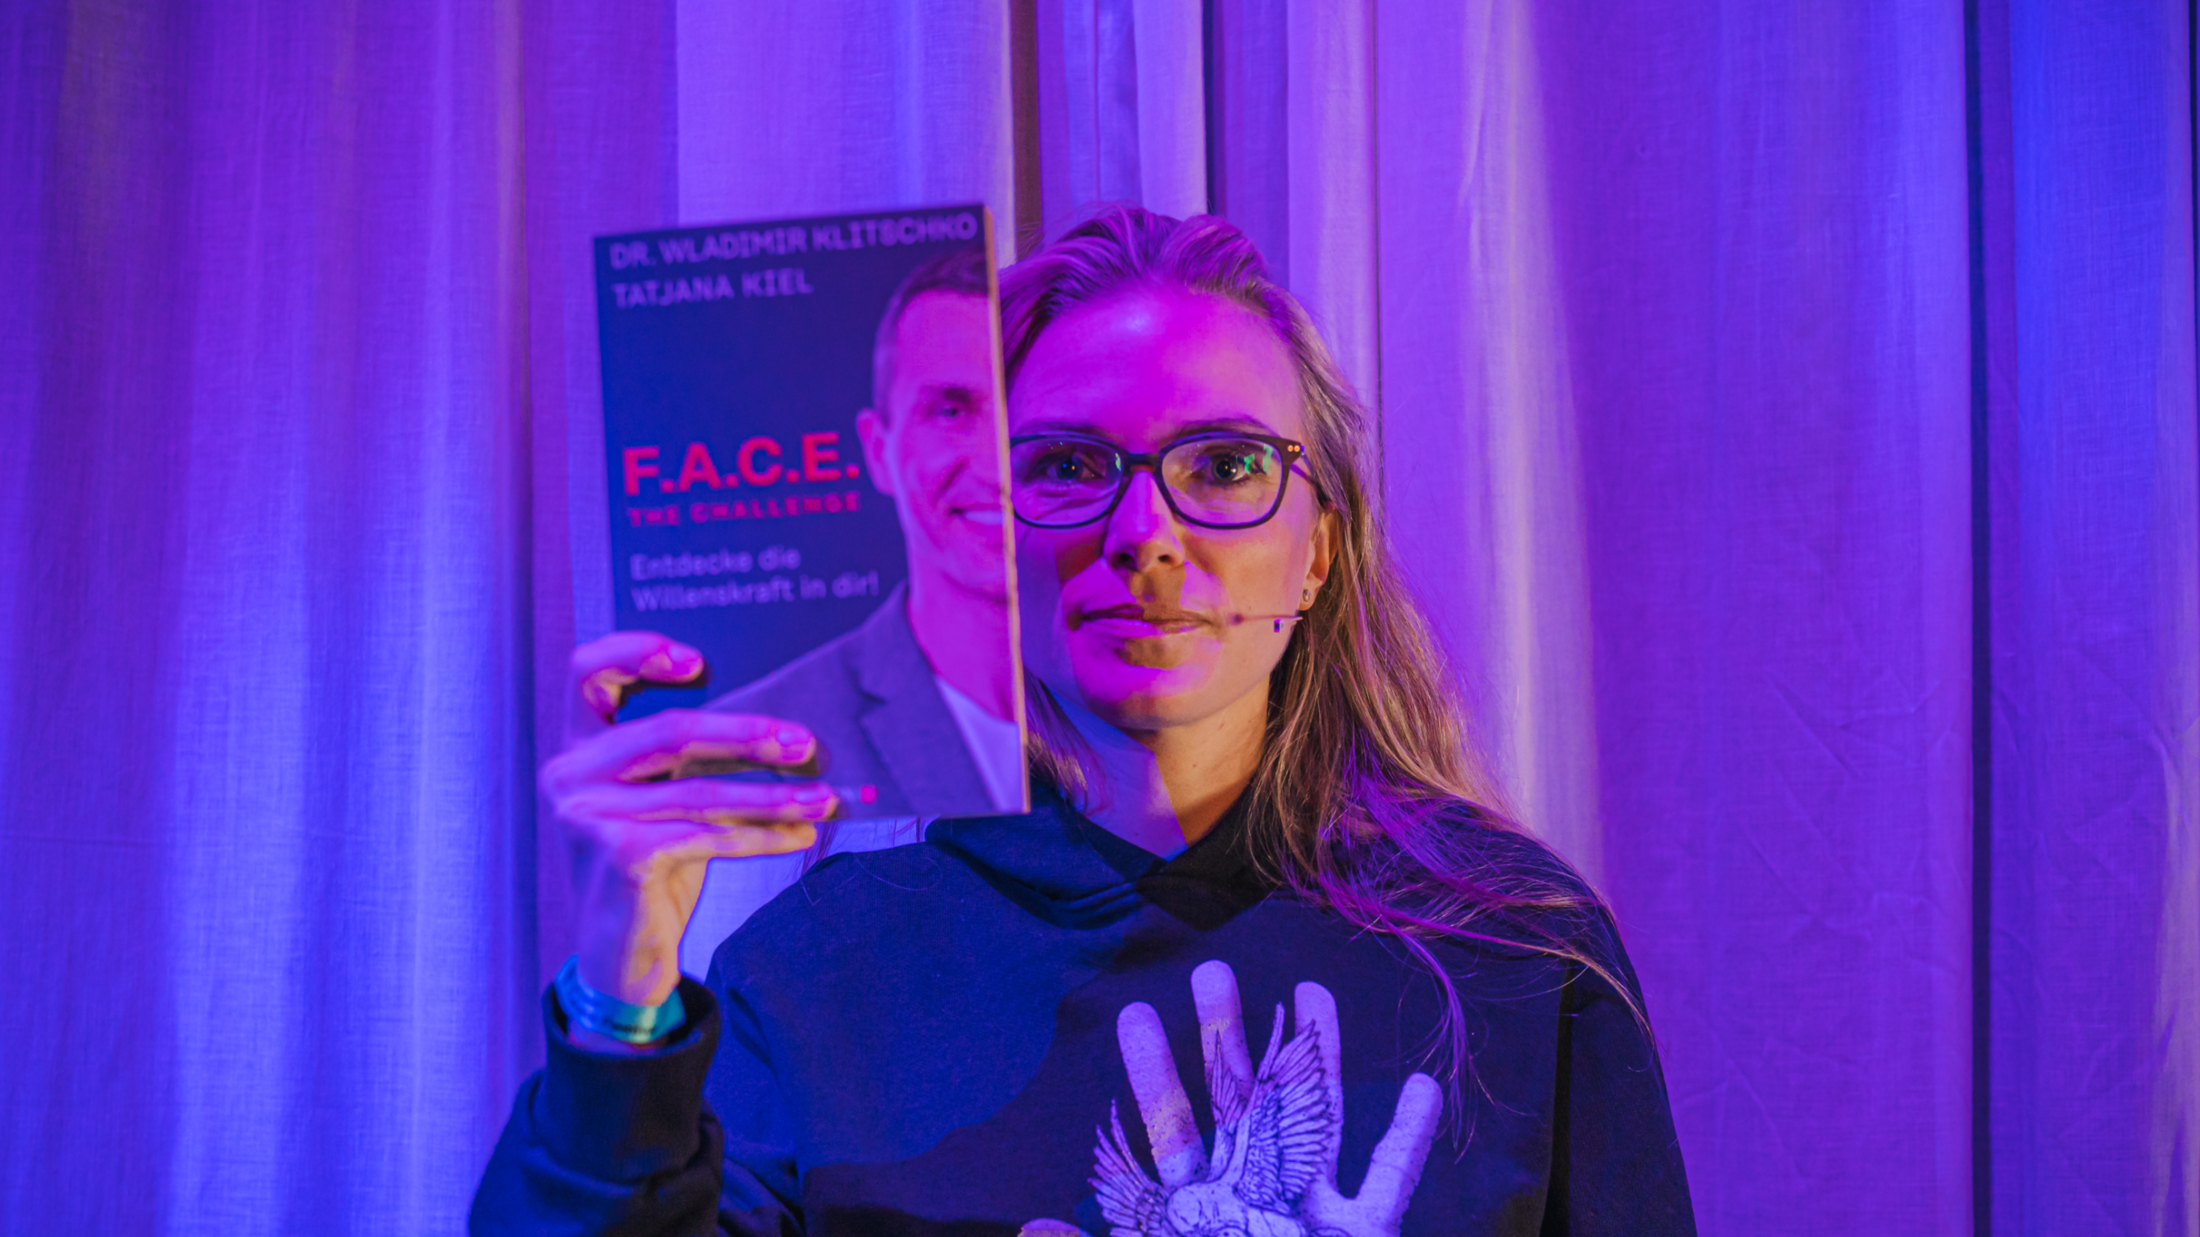 Kiel ist langjährige Geschäftspartnerin von Dr. Wladimir Klitschko und startete die Initiative #WeAreAllUkrainians. (Bild: Stefan Friedrich Mayr Photography / Female Future Festival )